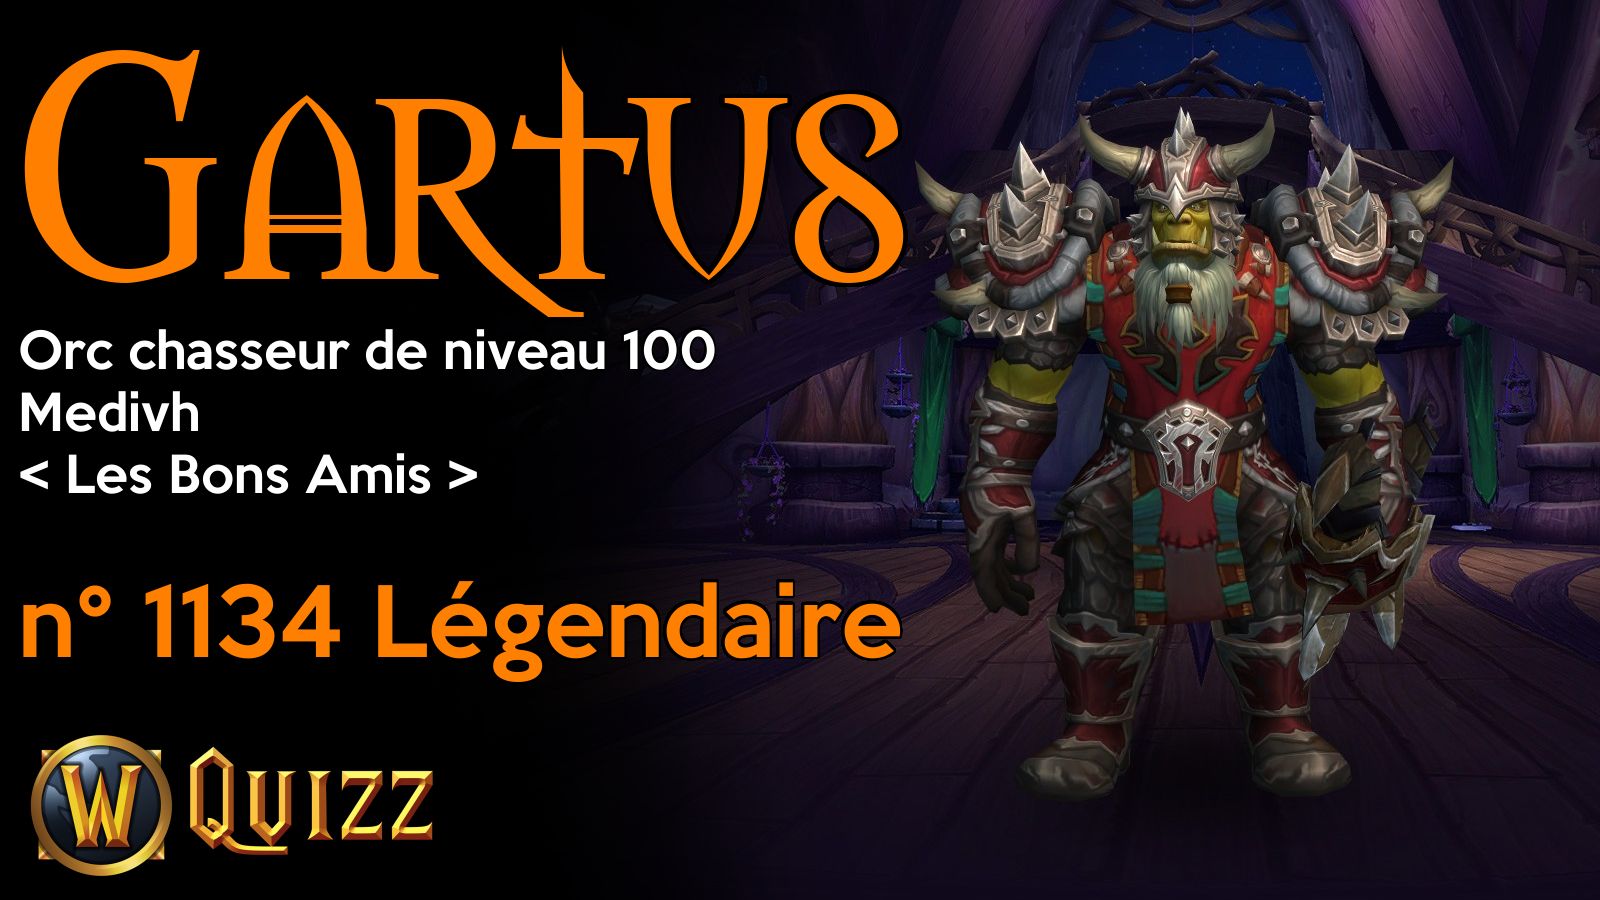 Gartus, Orc chasseur de niveau 100, Medivh